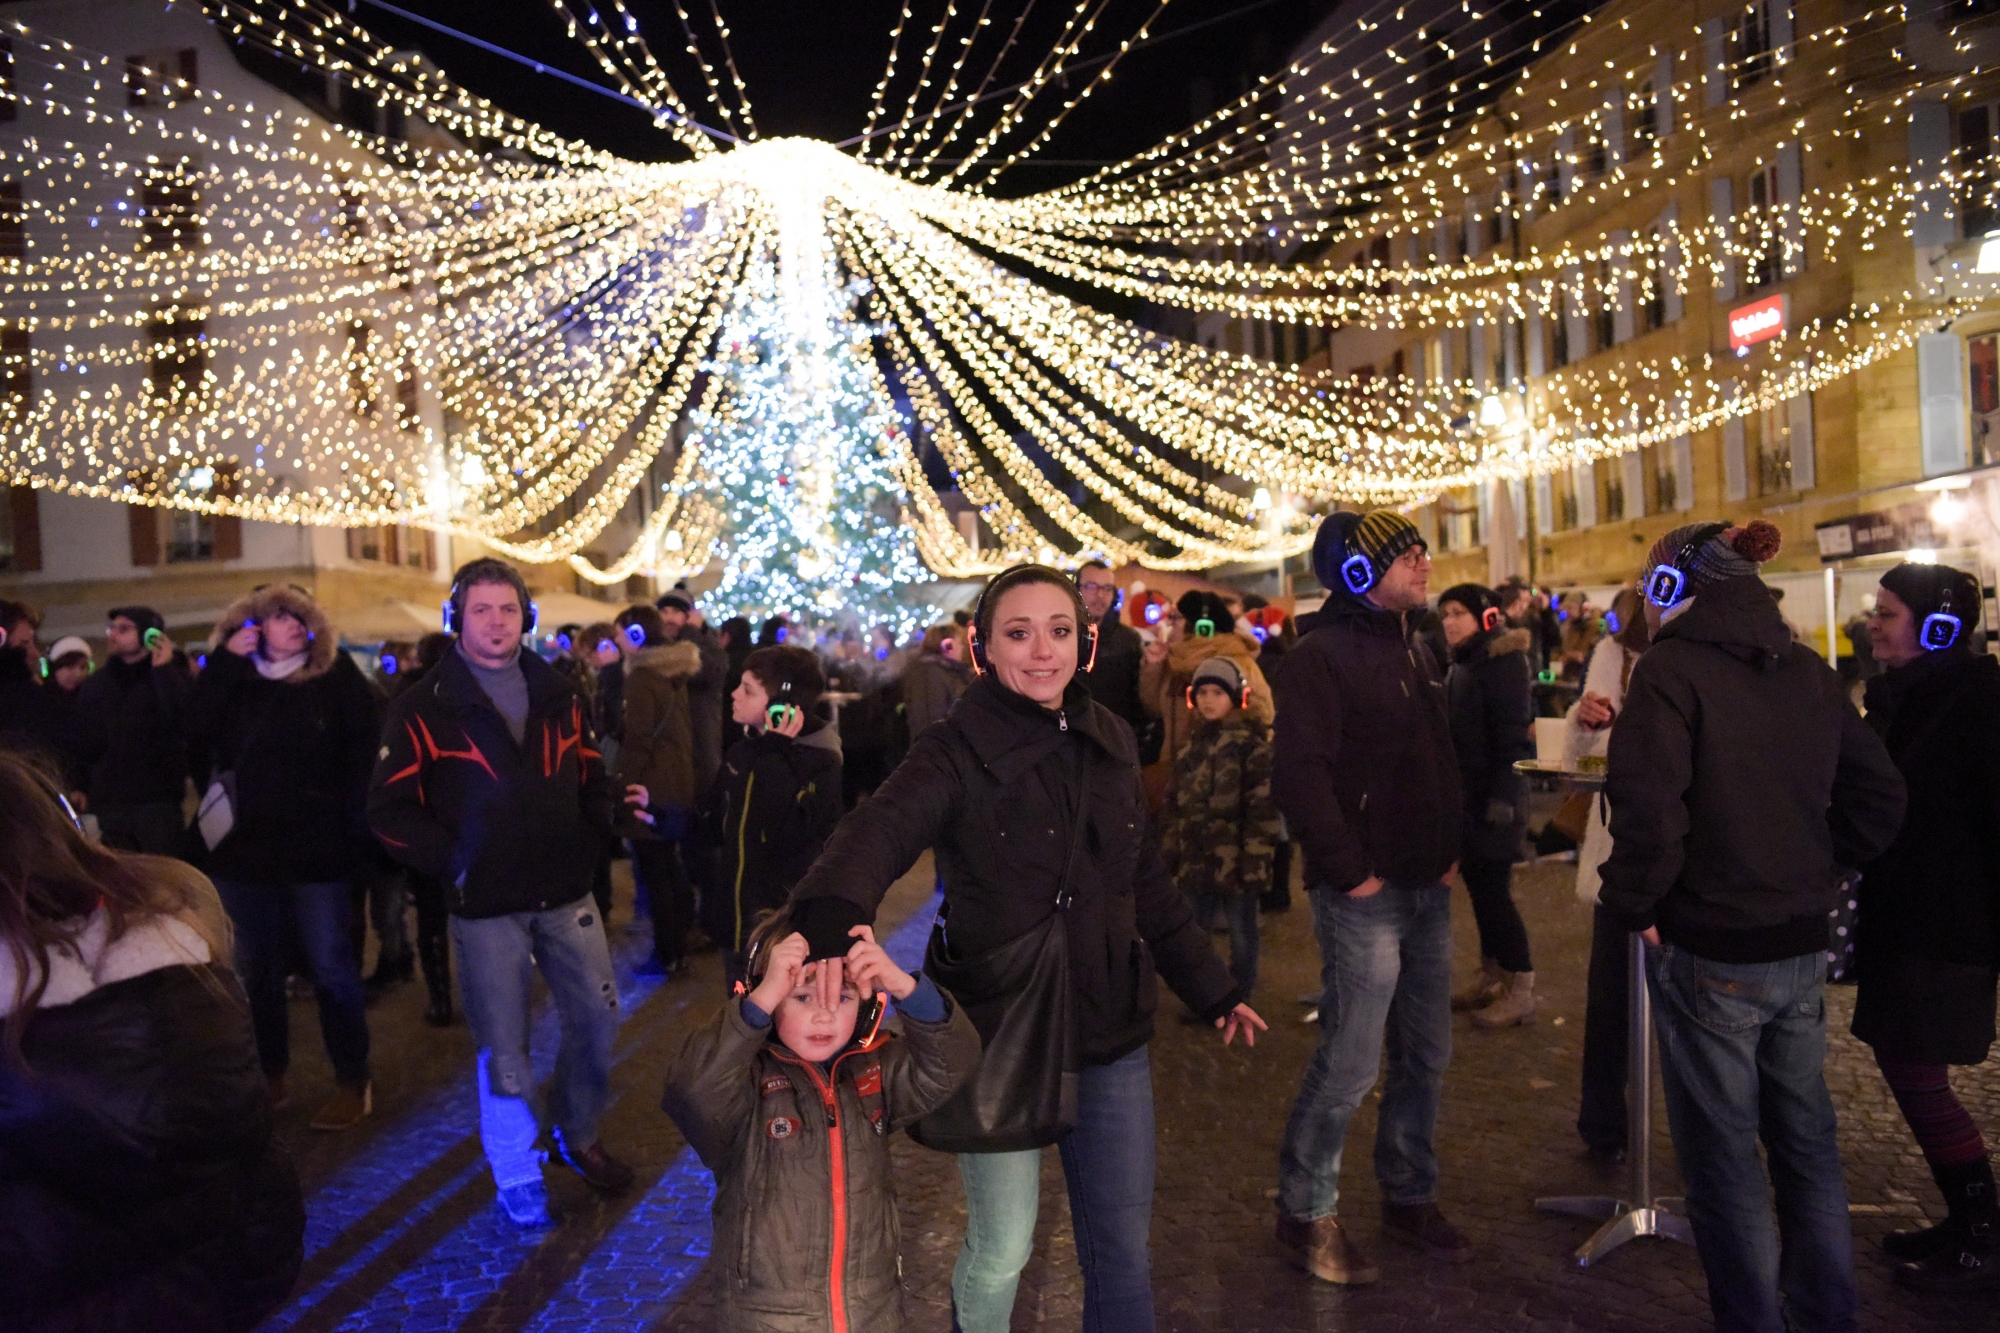 Les casques lumineux se multiplient sous les décorations de Noël sur la place des Halles.